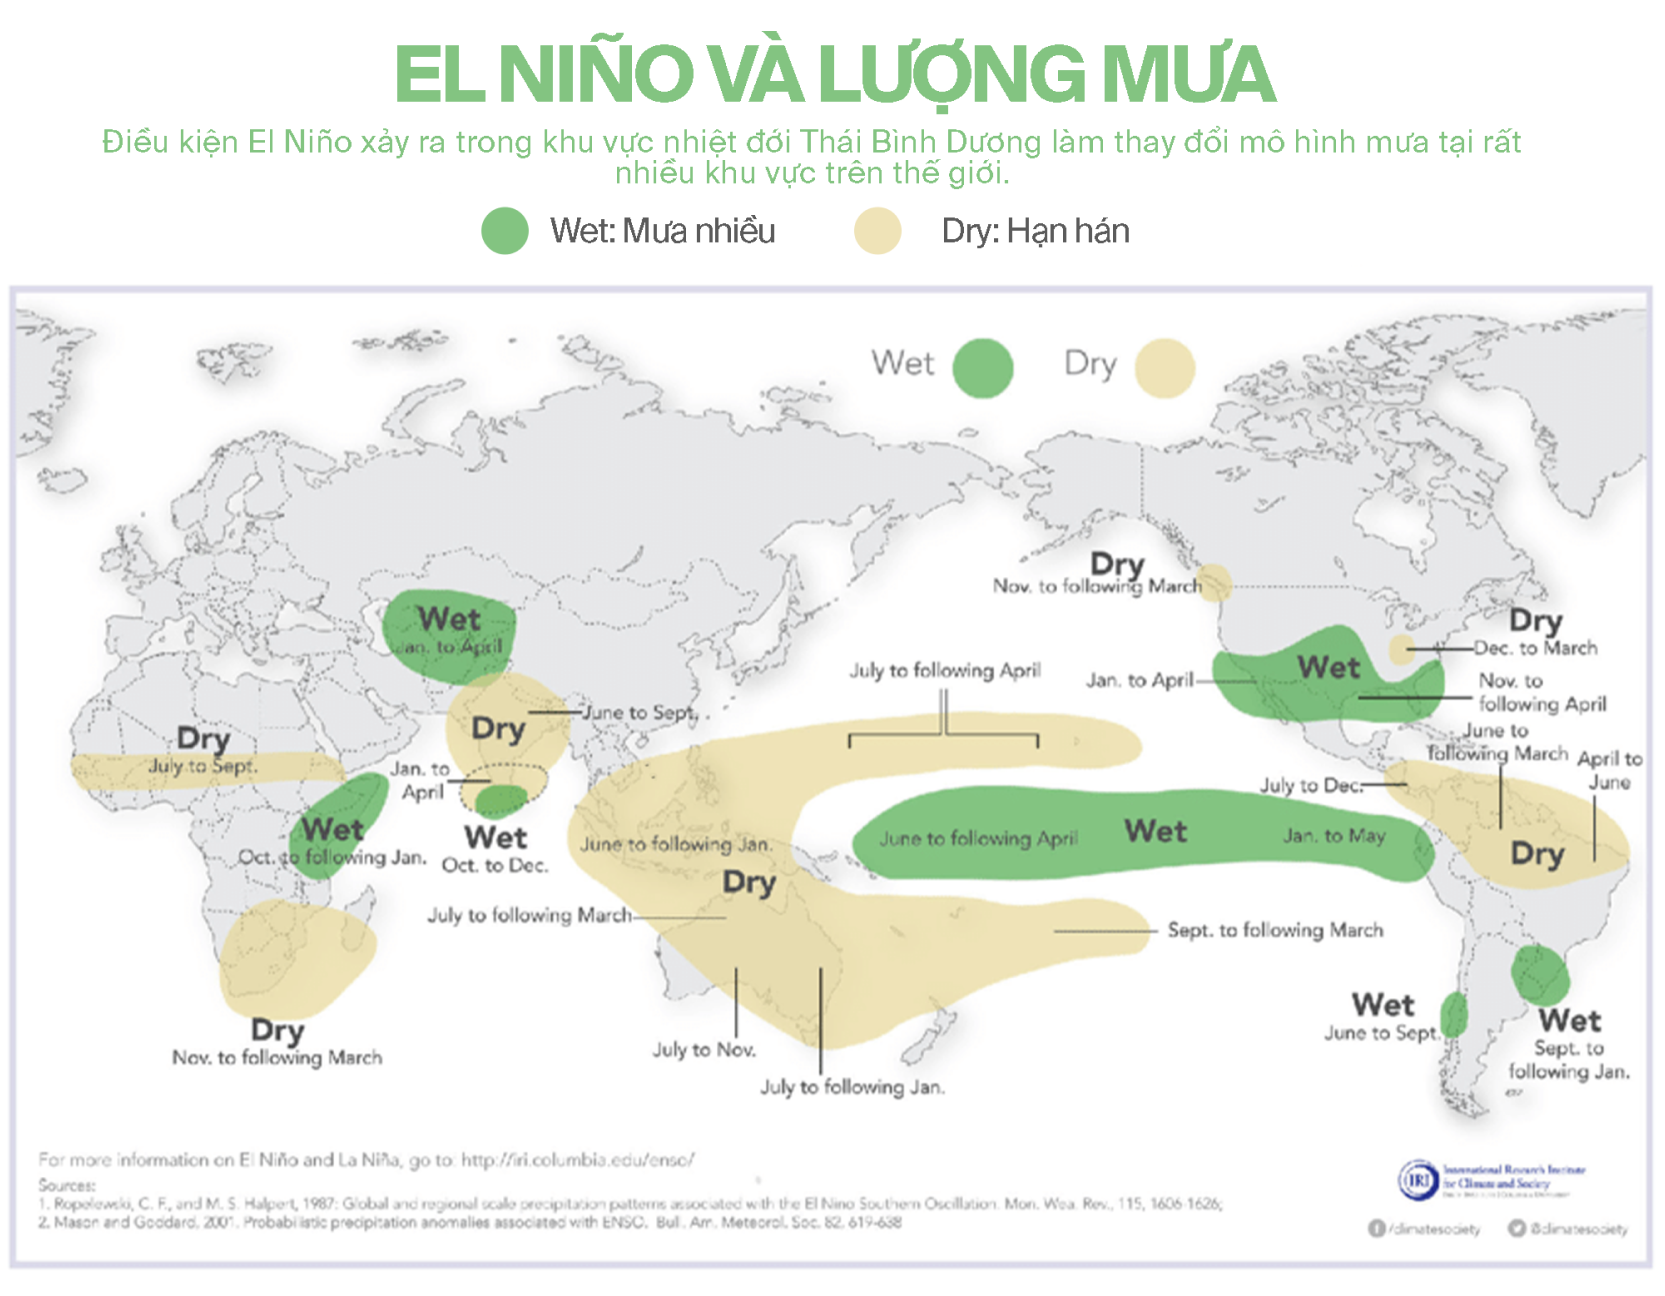 Giải mã El Nino: Lịch sử, nguồn gốc và những bí ẩn của hiệu ứng cánh bướm hai bên bờ Thái Bình Dương - Ảnh 3.